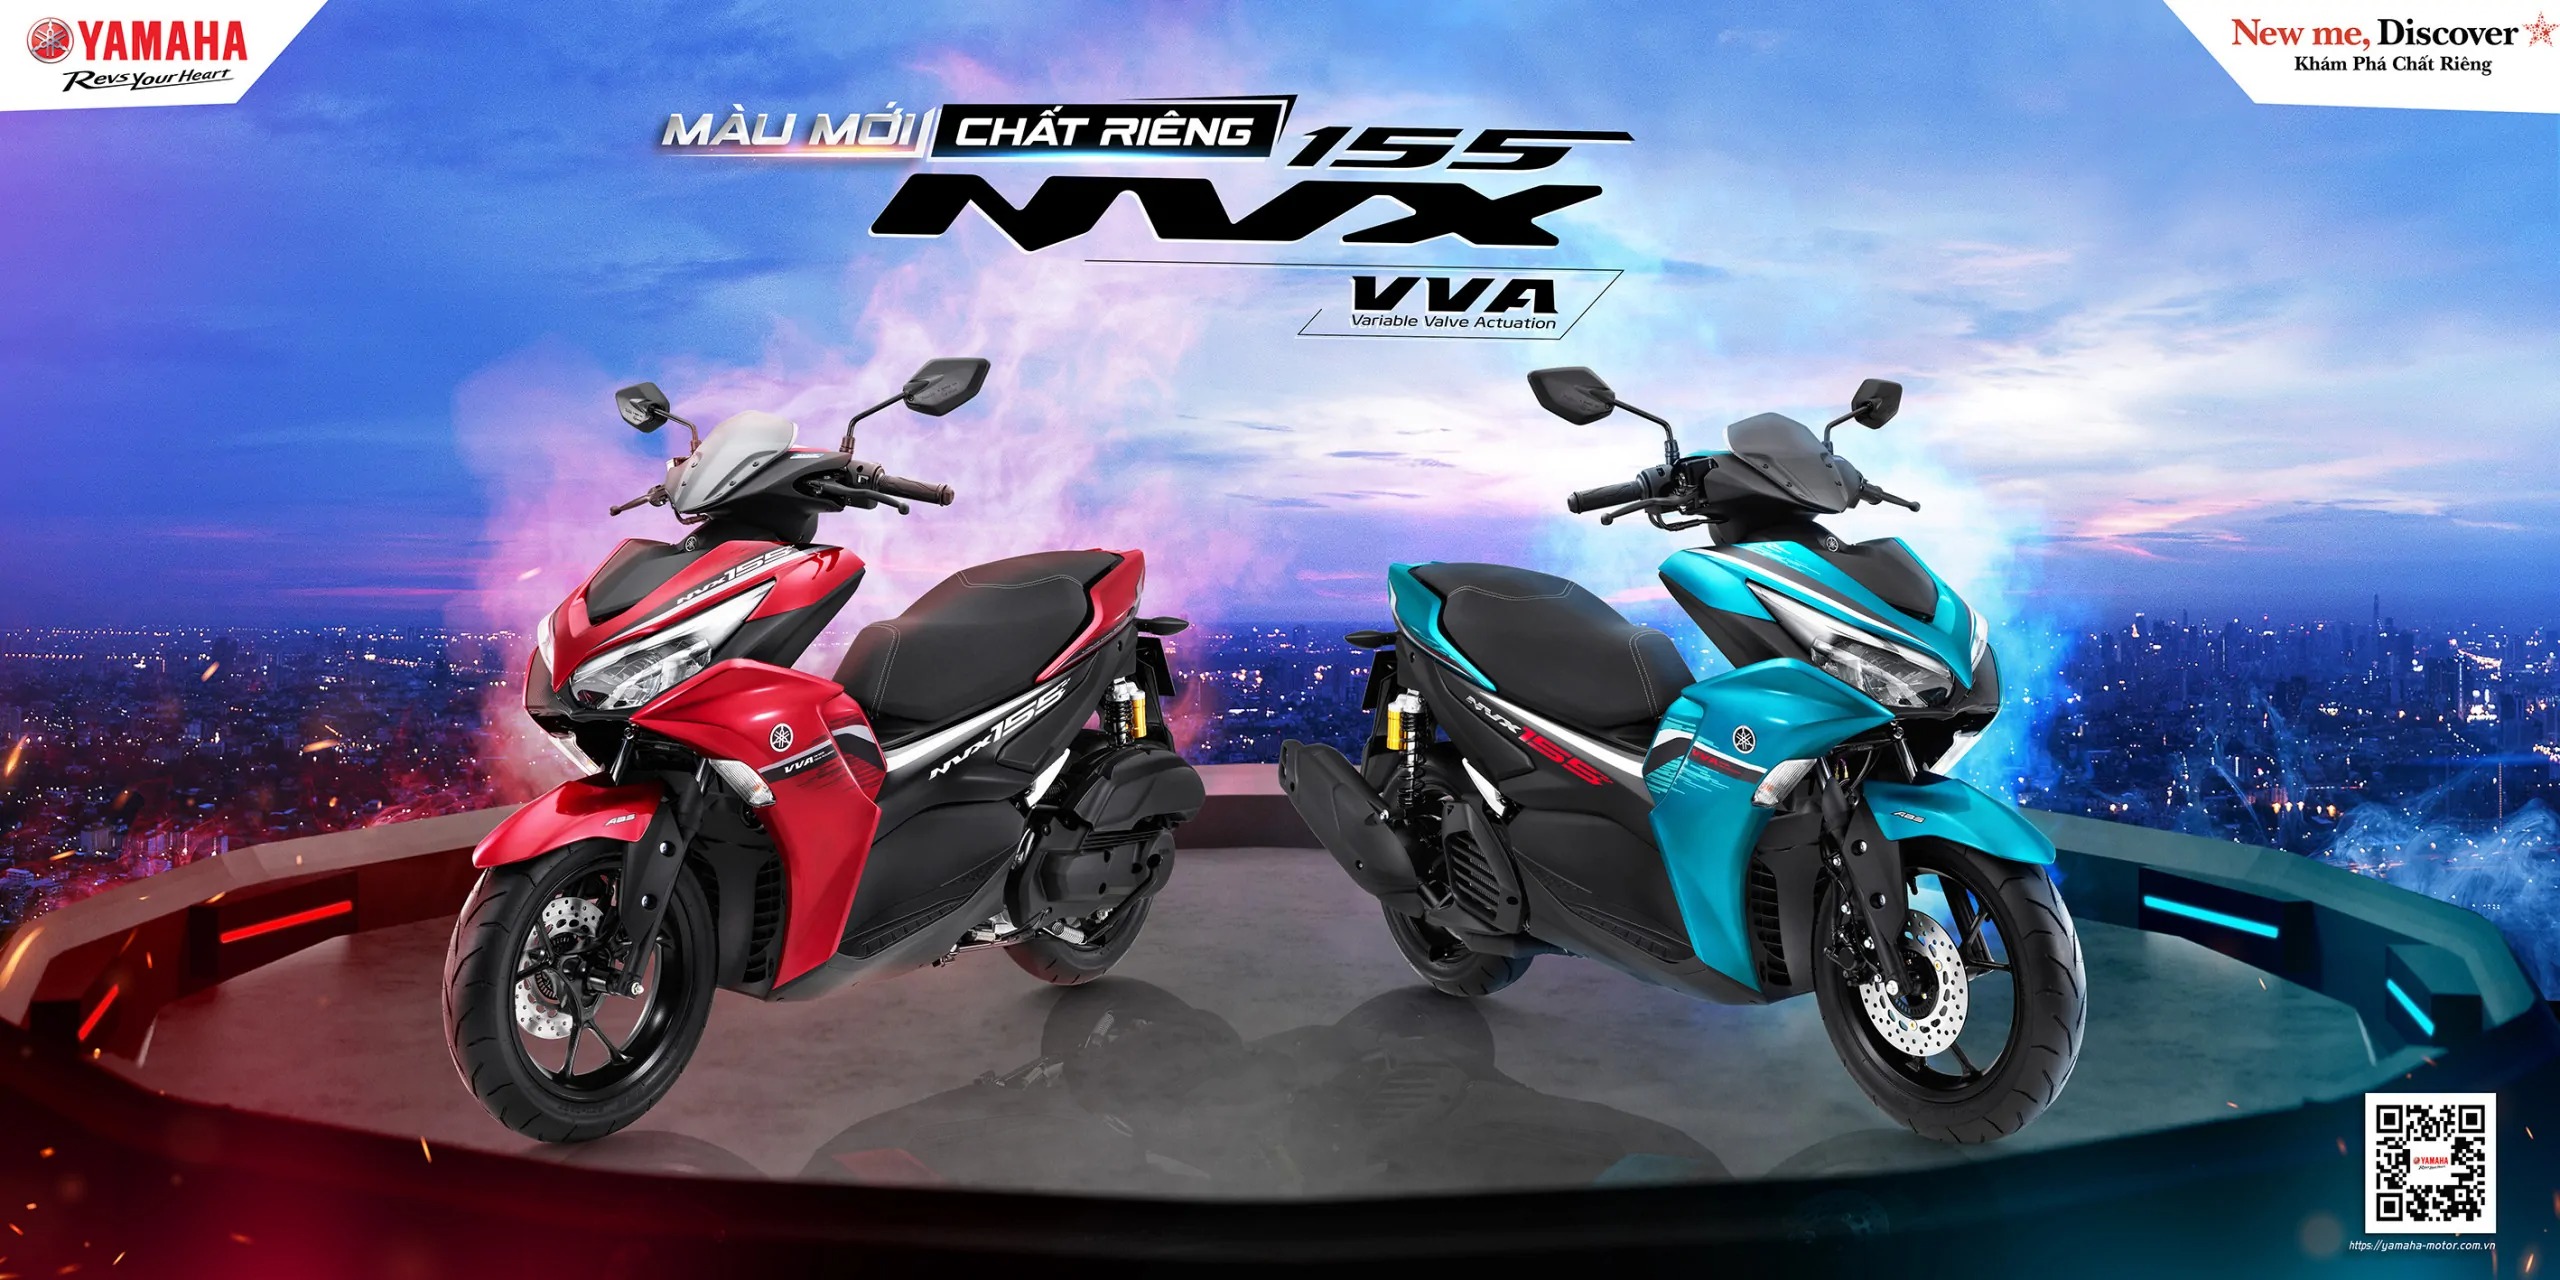 Yamaha NVX 155 VVA 2022 ra mắt với các tùy chọn màu mới, thiết kế và động cơ không đổi